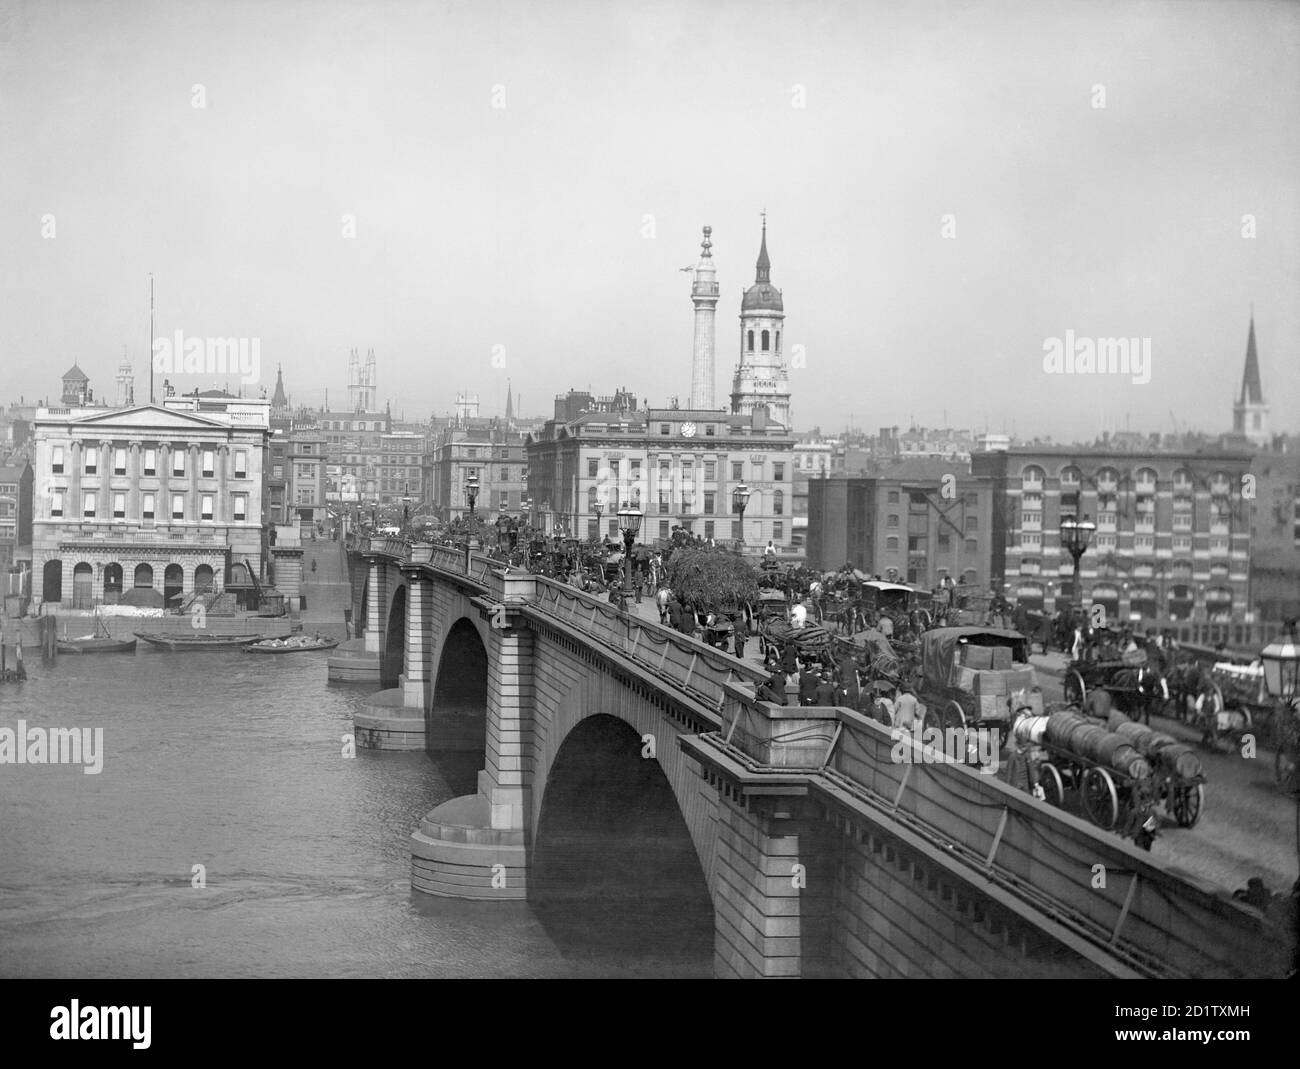 LONDON BRIDGE, City of London. Die Brücke wurde 1825 wieder aufgebaut, da die alte nach einem Entwurf von John Rennie dem zunehmenden Verkehr nicht mehr gewachsen war. Die früheste bekannte Brücke auf der Website stammt aus der Römerzeit. Fotografiert von Henry Taunt im Jahr 1880. Stockfoto